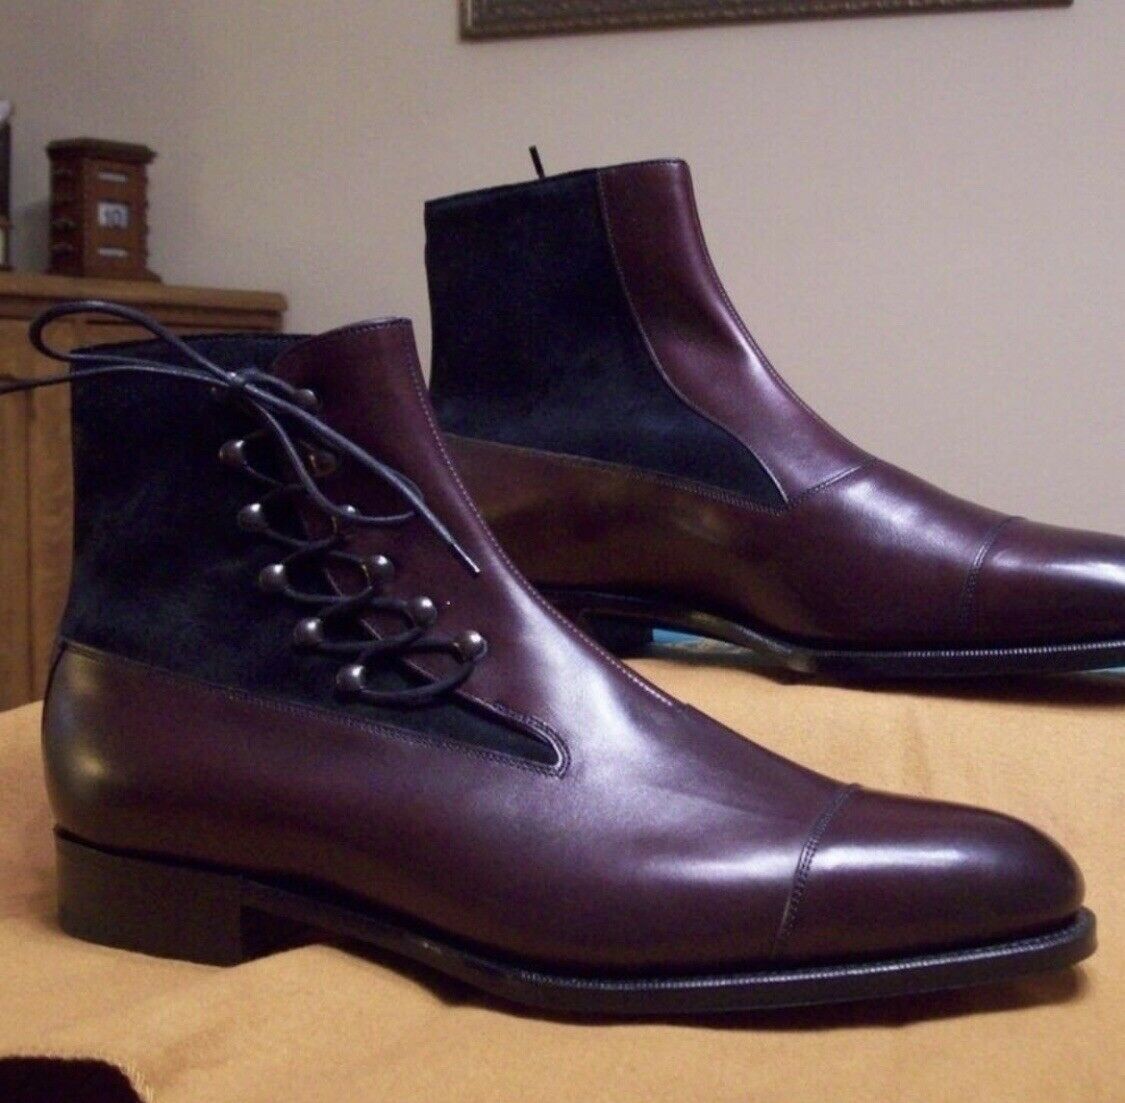 Men's Handmade Maroon Brown Leather & Suede Boots, Men's Wingtip Boots ...